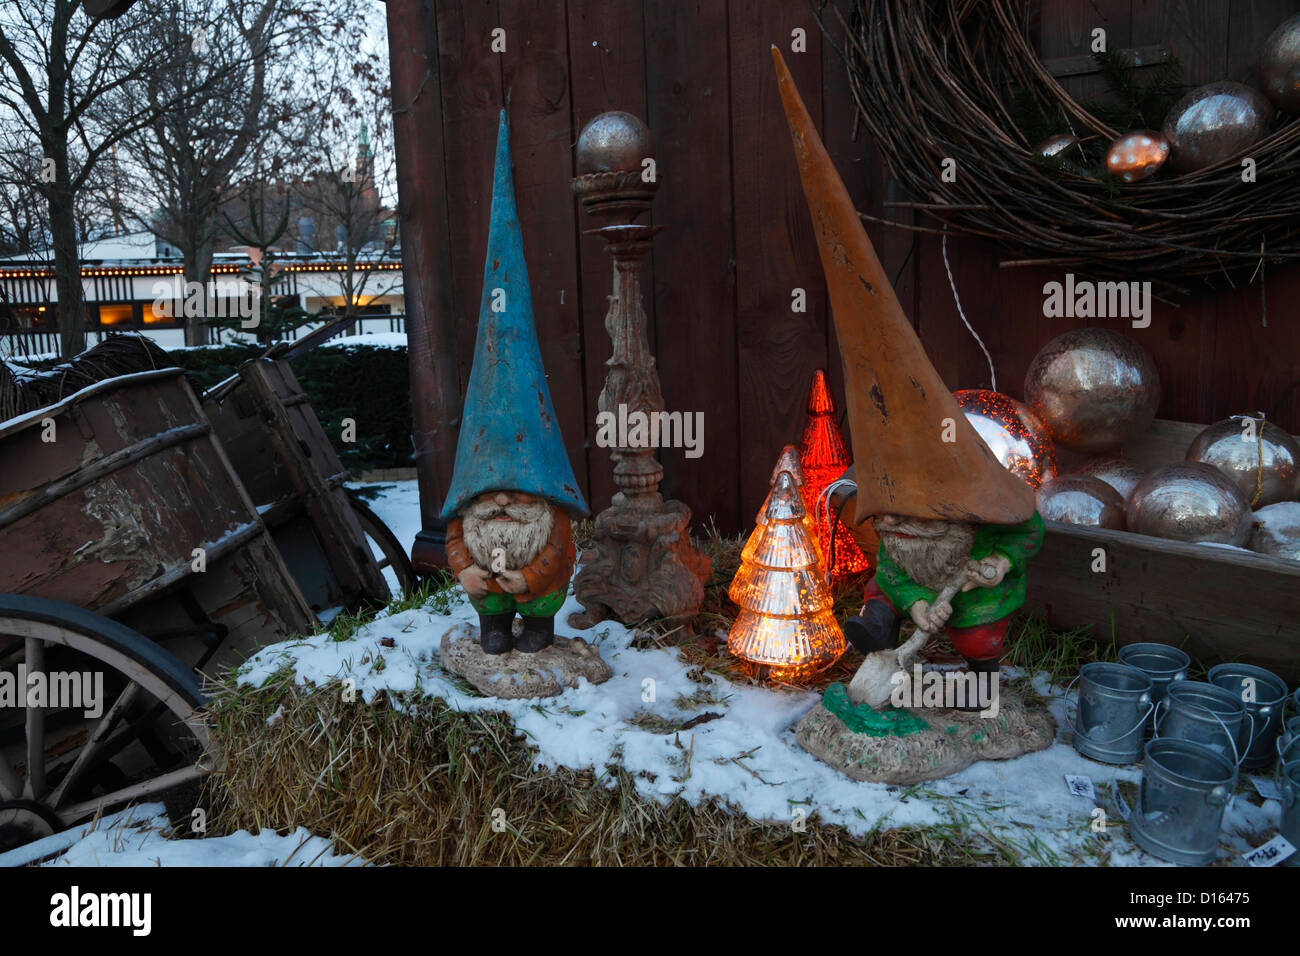 Alte Gartenzwerge, brownies oder kobolde mit Nordic Weihnachten im Winter Landschaft im Tivoli Weihnachtsmarkt, Kopenhagen, Dänemark verbunden Stockfoto